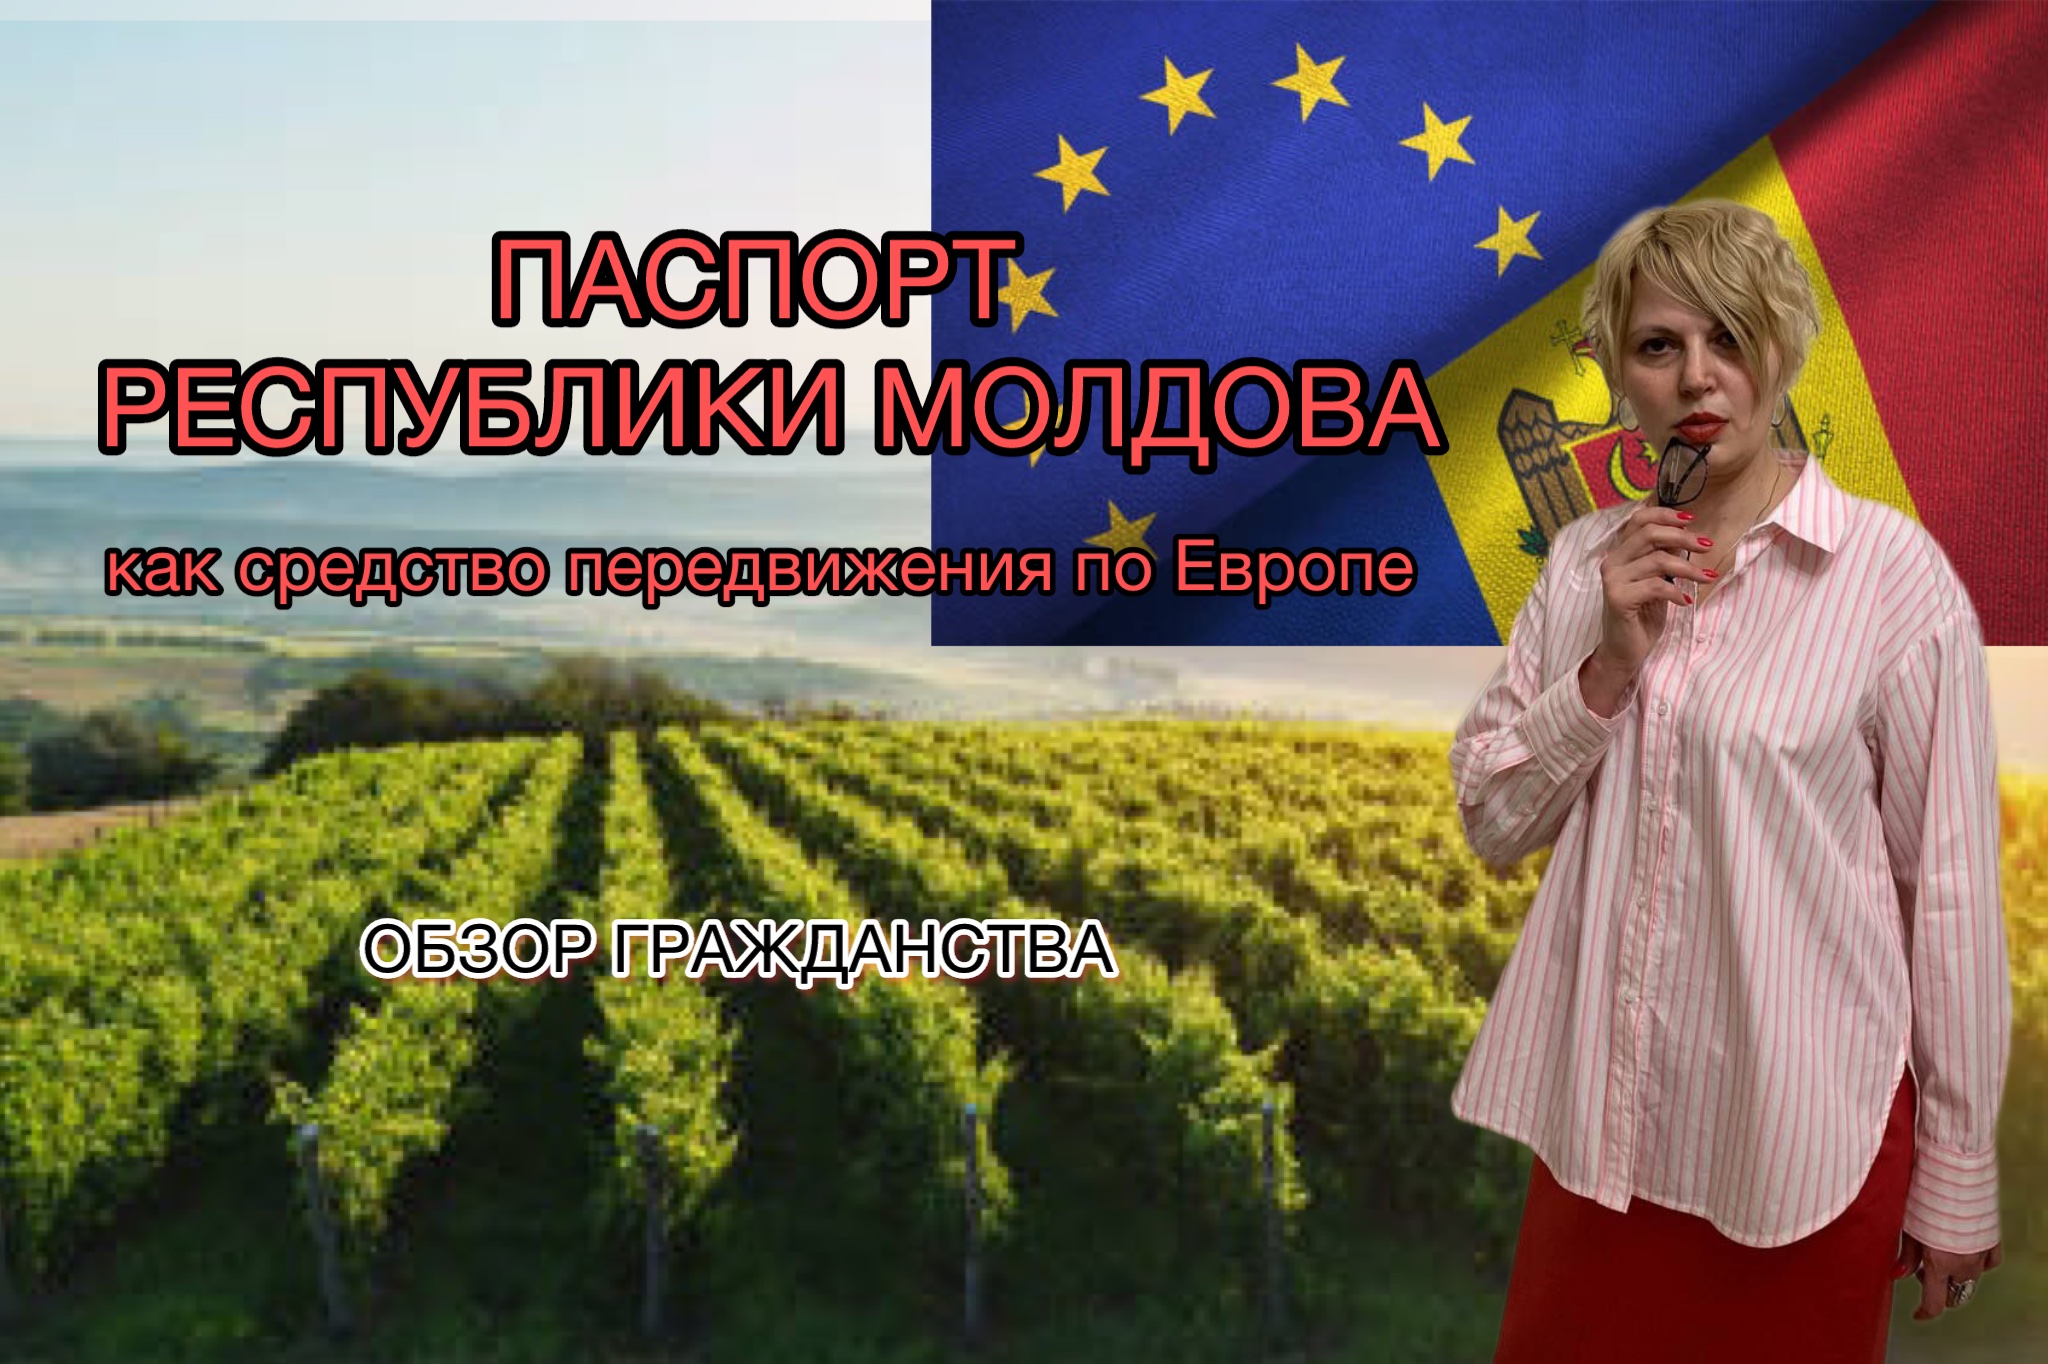 Что дает Россиянину гражданство Республики Молдова? #молдова #гражданствомолдова